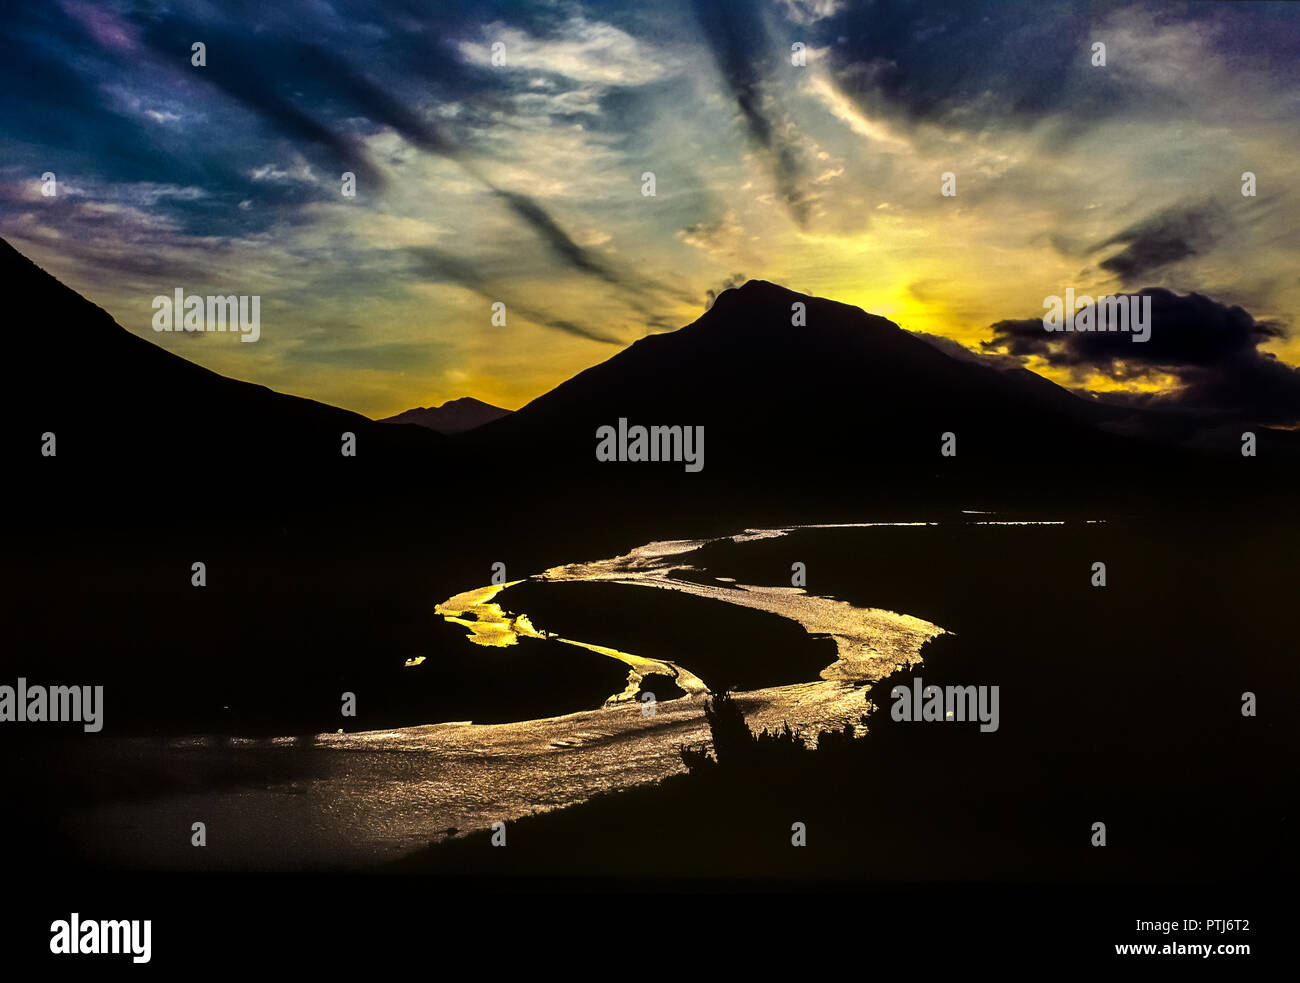 Twilight riflessa sulle acque del fiume Vjosa. Fotografia analogica Foto Stock